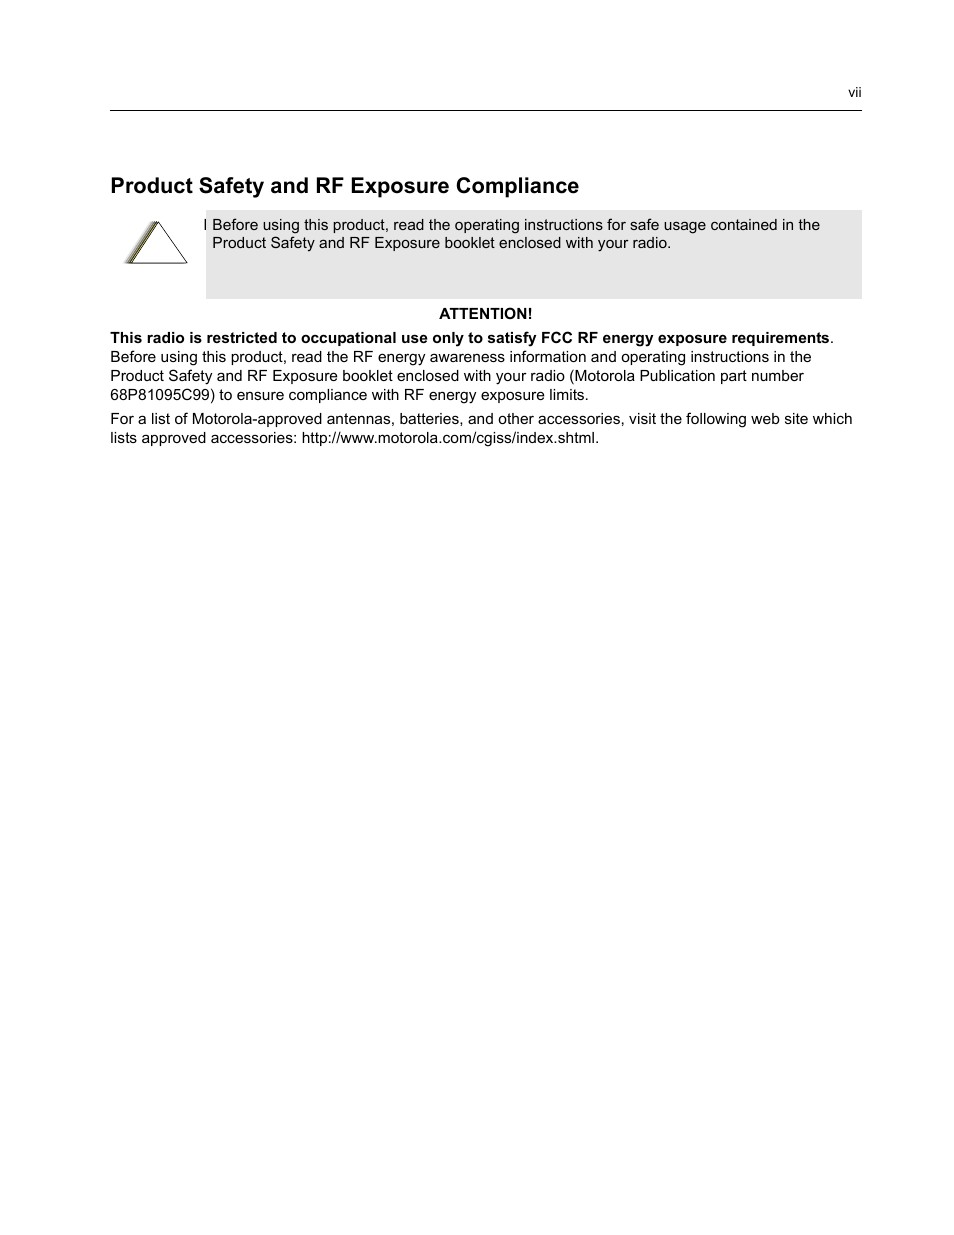 Safety information | Nikon RADIUS CM200 User Manual | Page 9 / 70